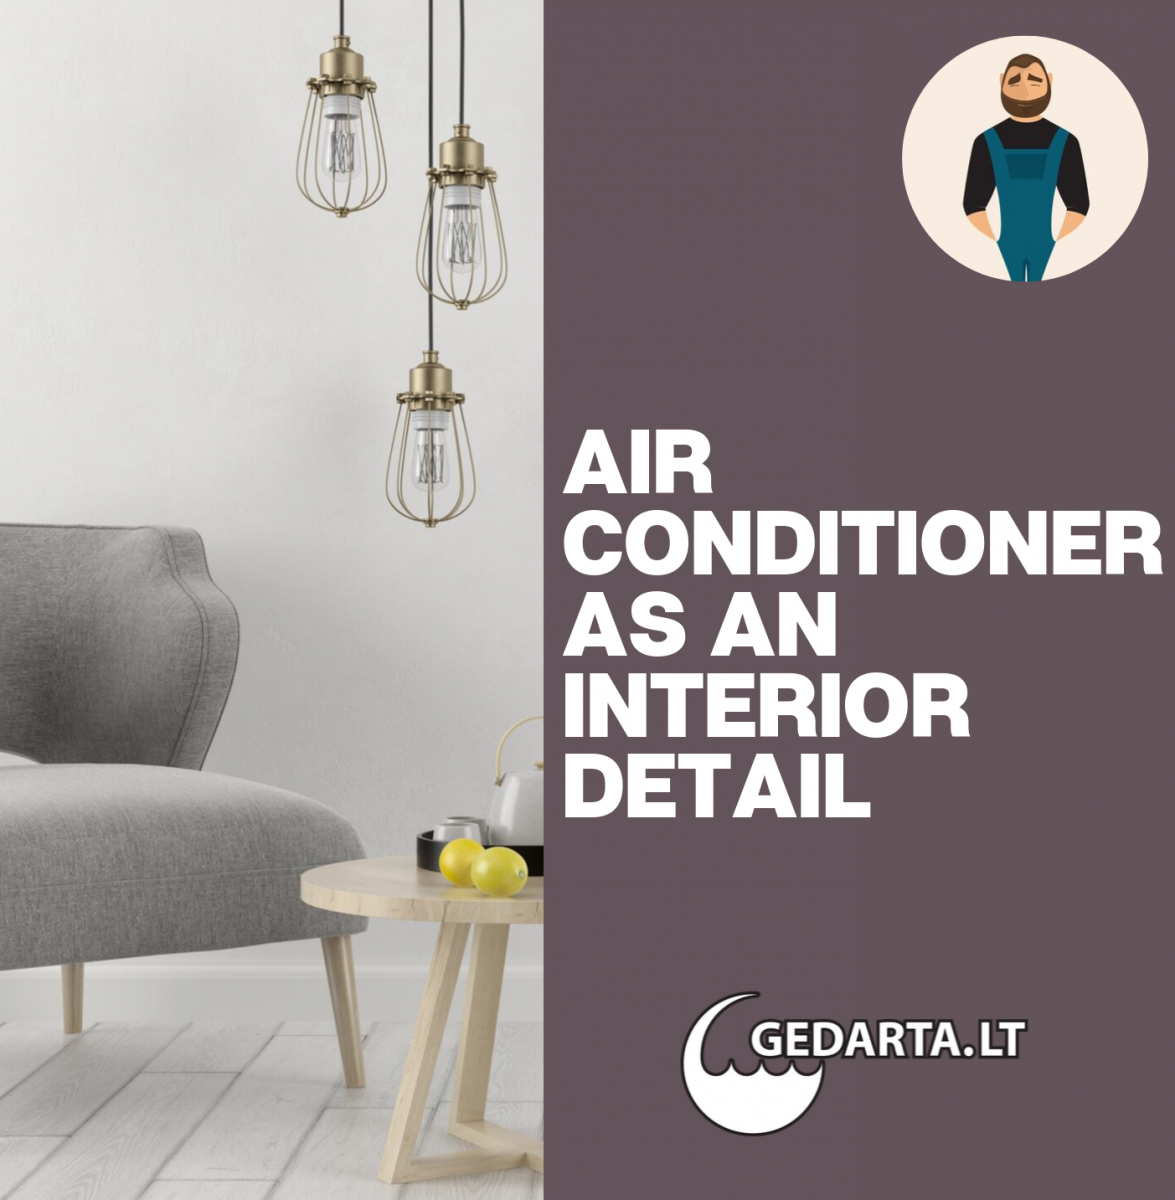 Air Conditioner as an interior detai